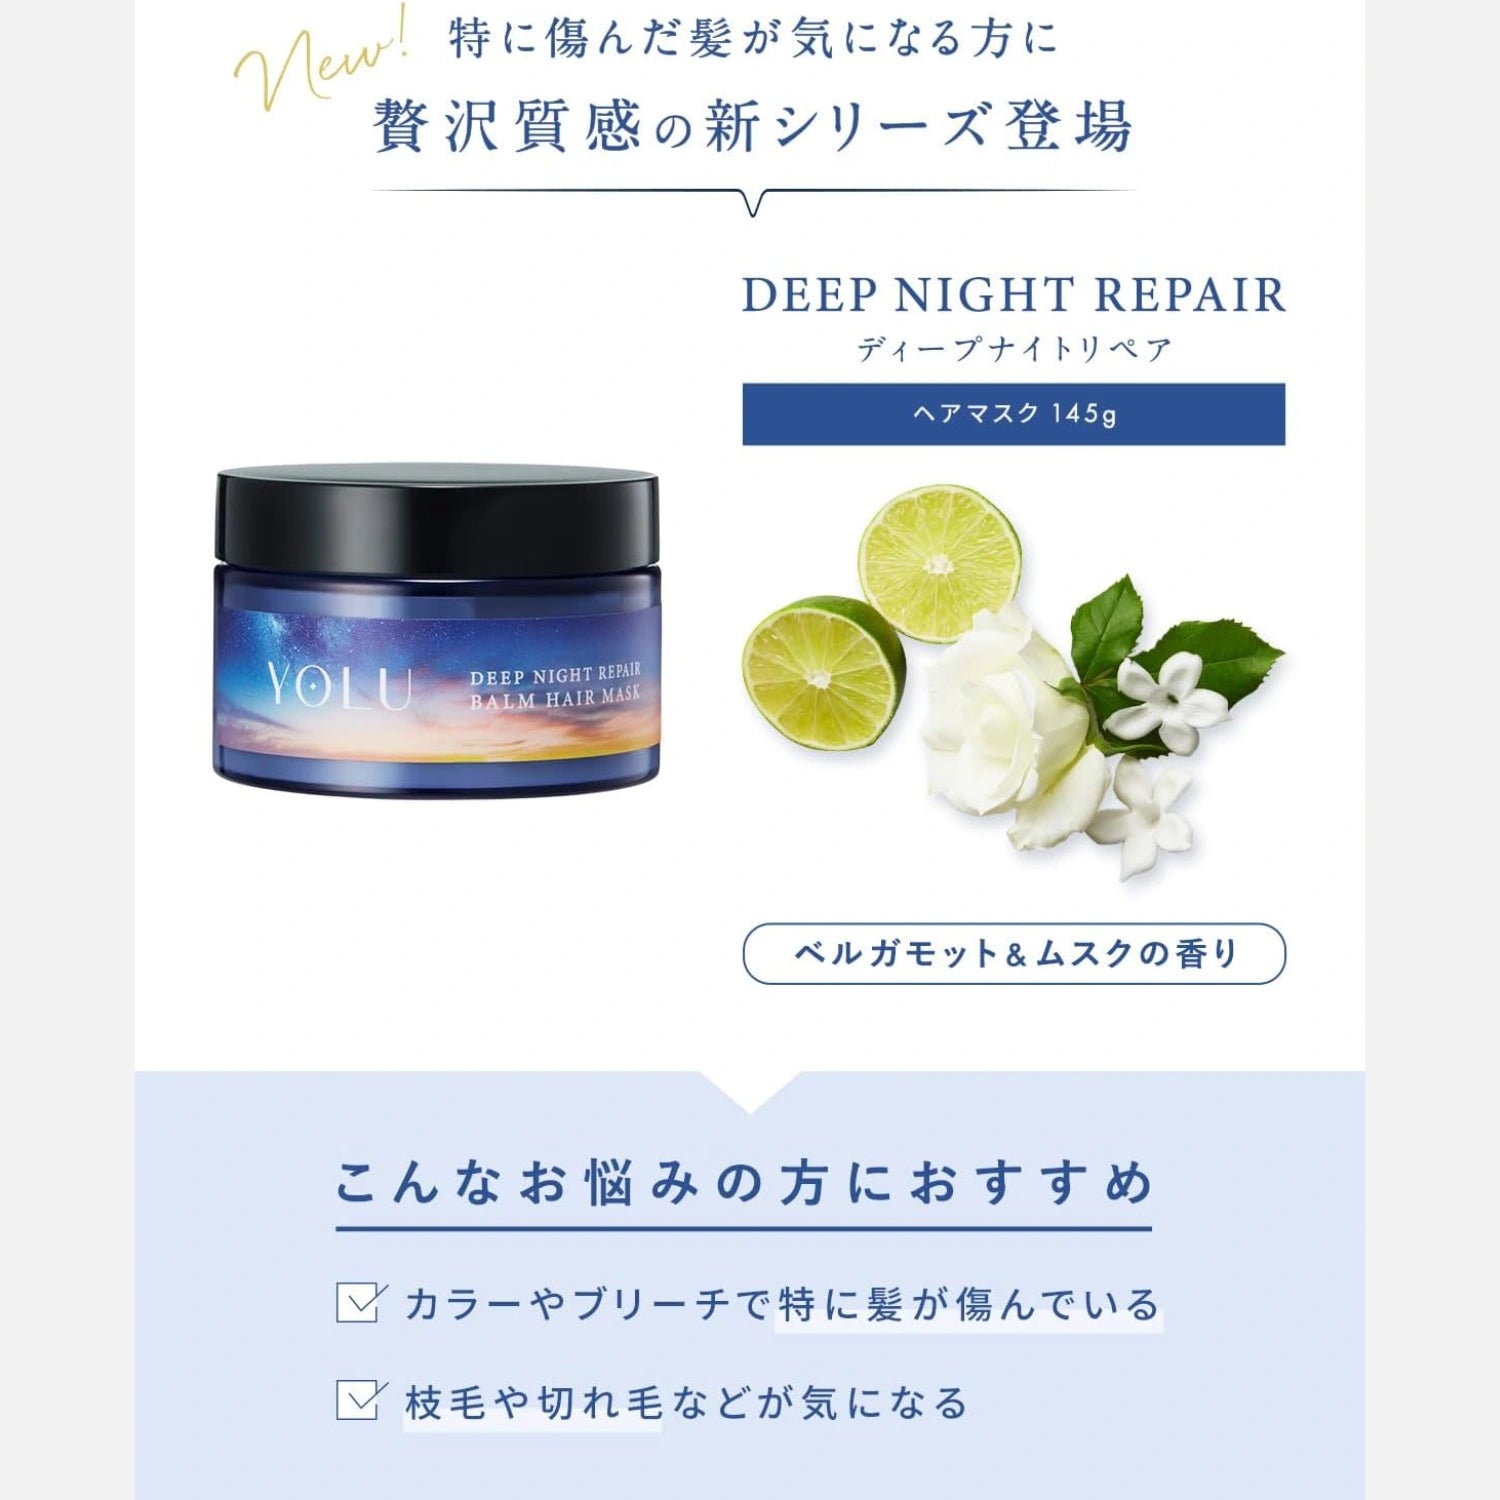 YOLU Deep Night Repair Hair Mask 145g - Buy Me Japan